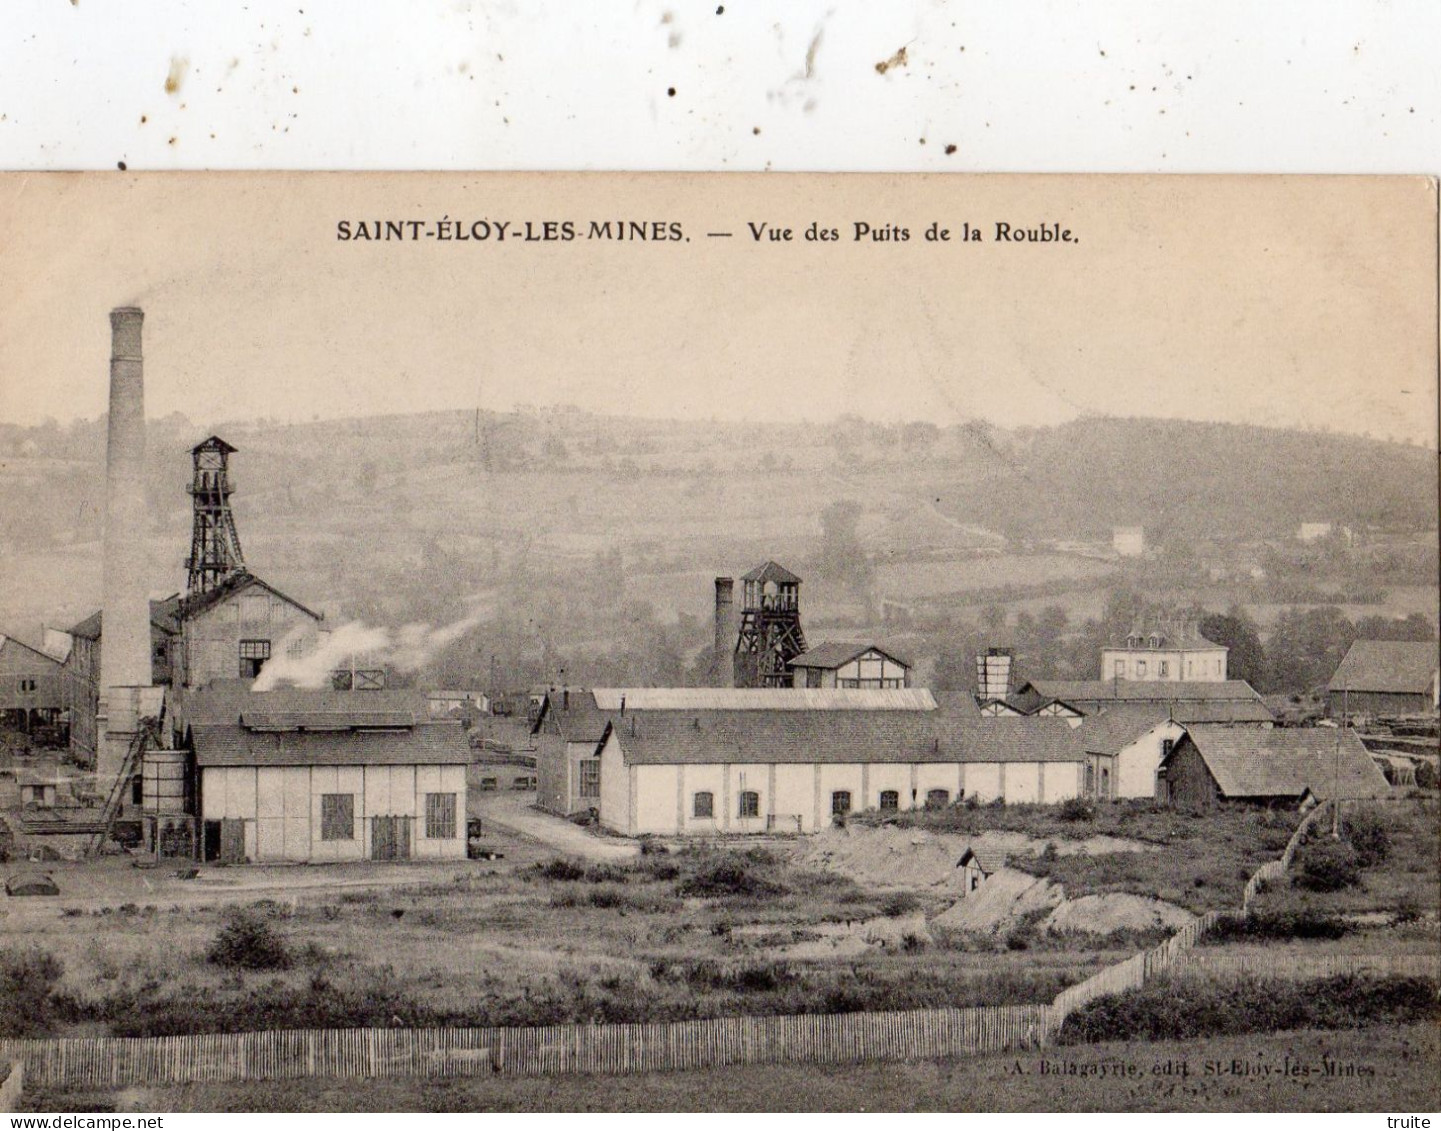 SAINT-ELOY-LES-MINES VUE DES PUITS DE LA ROUBLE ( THEME MINE ) - Saint Eloy Les Mines